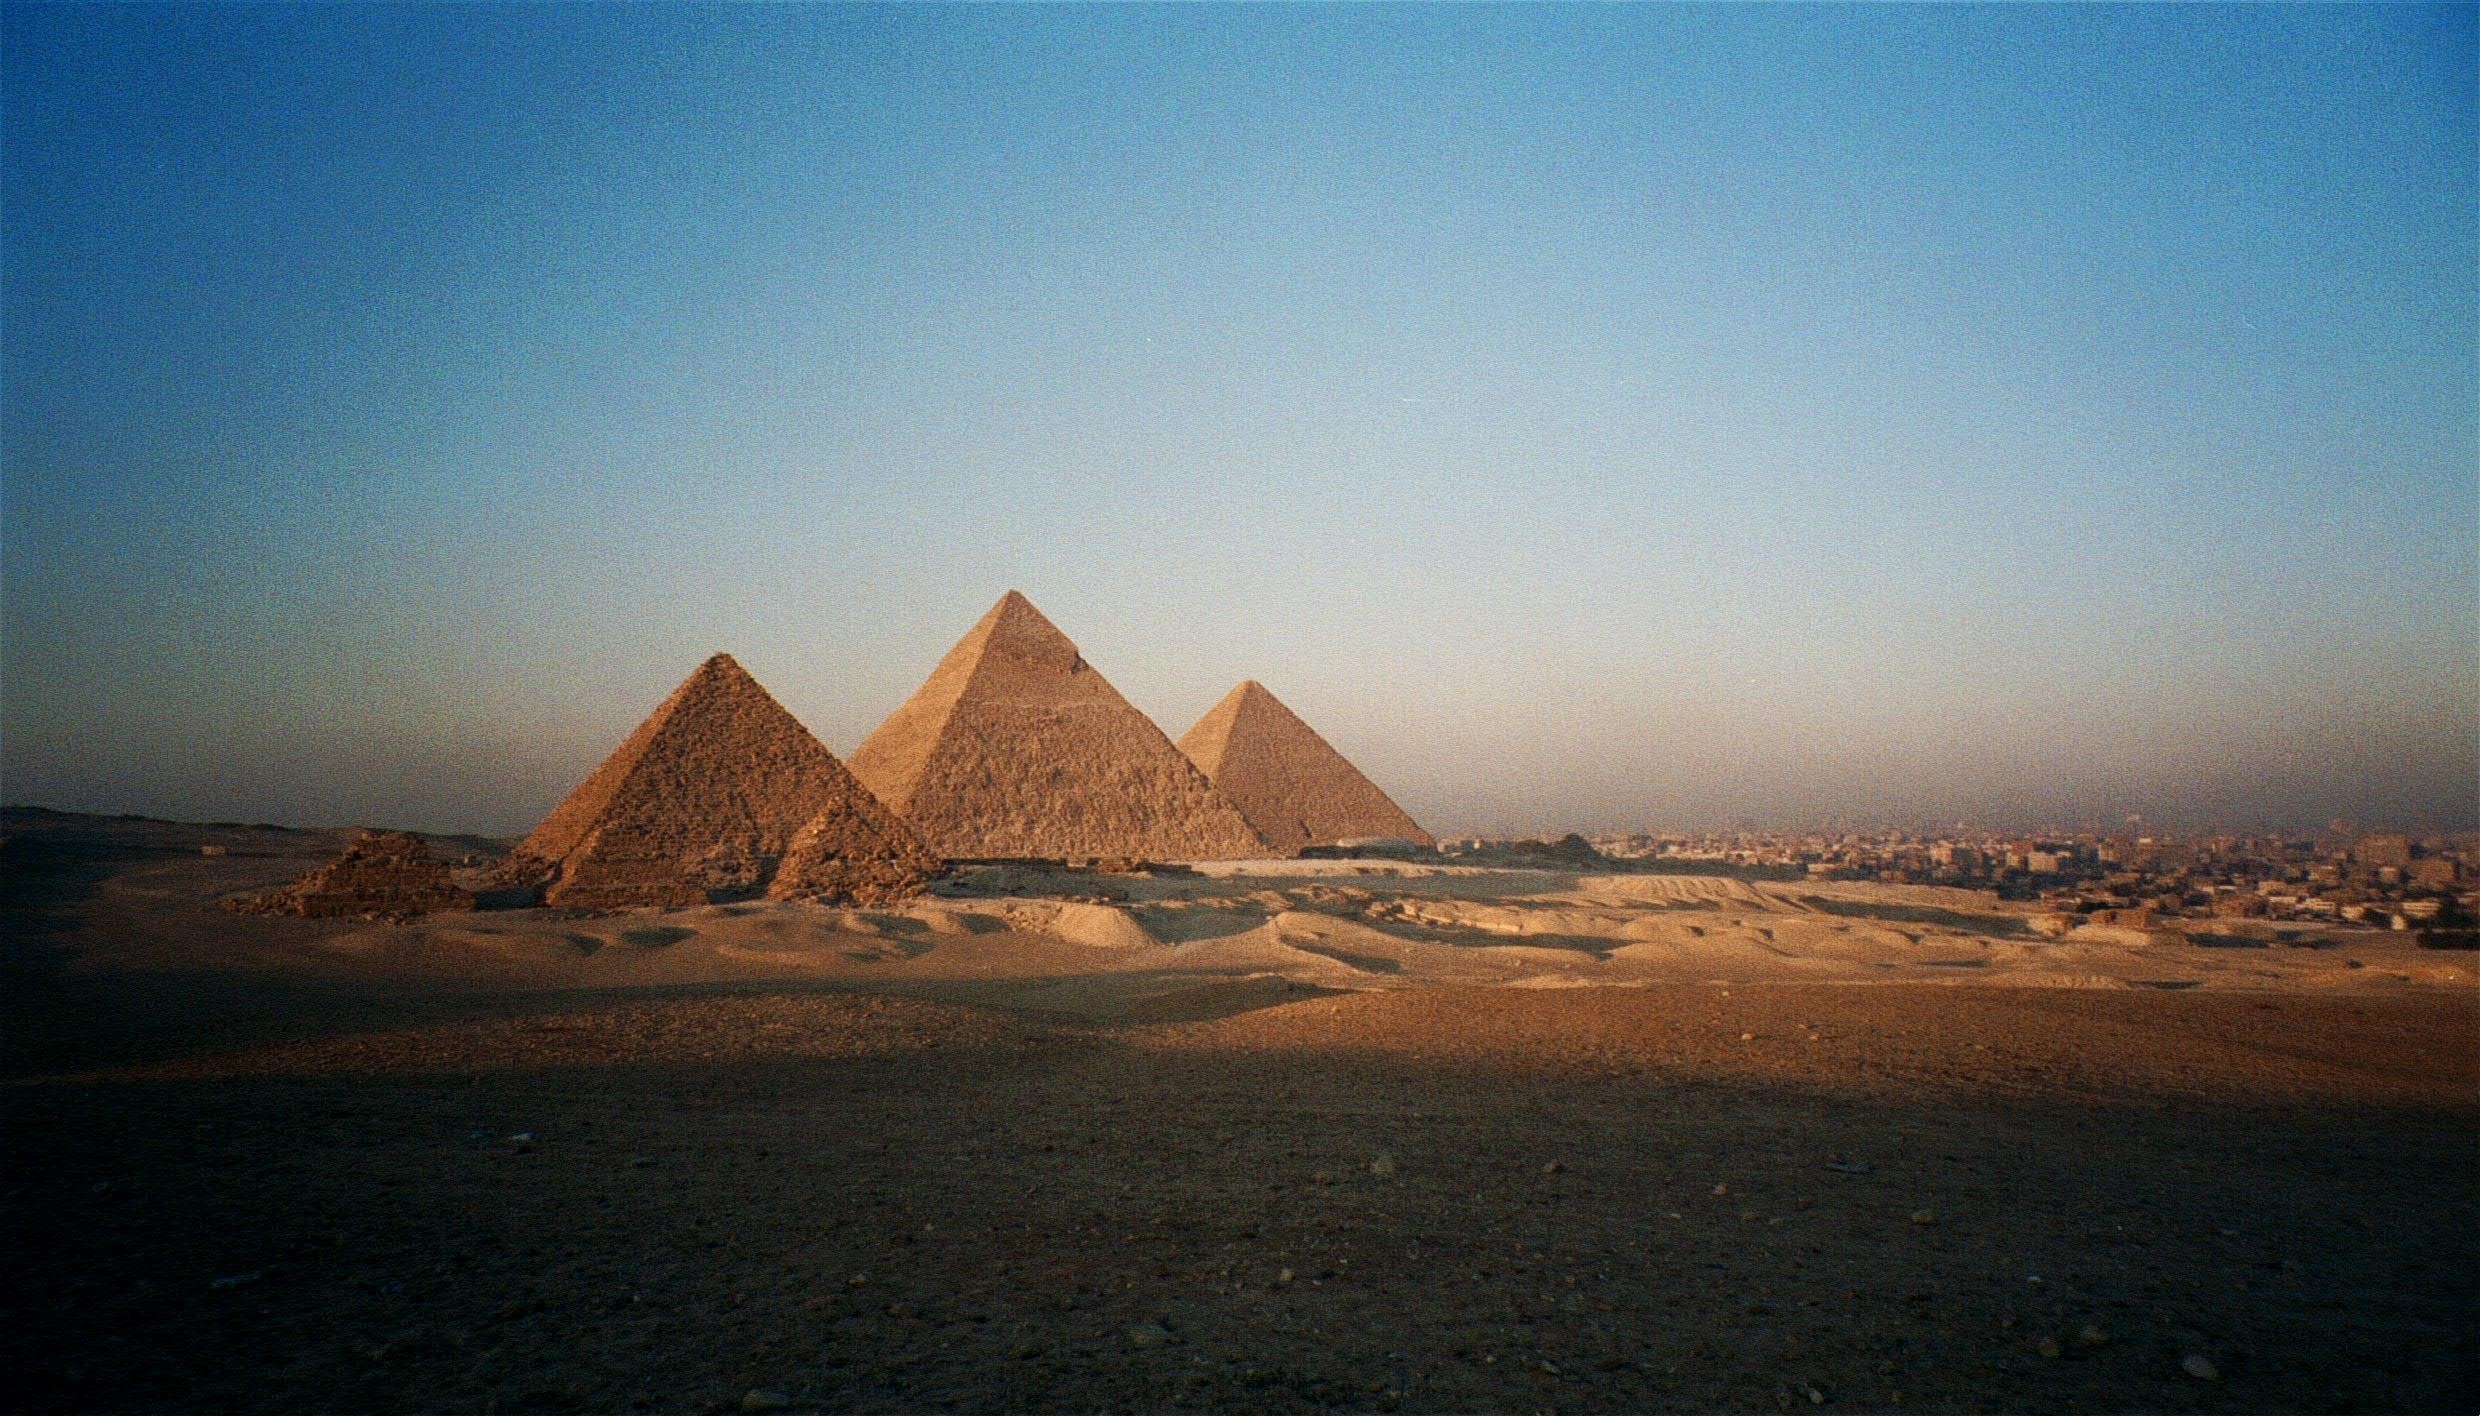 pyramids of giza wallpaper,pyramid,monument,landmark,historic site,natural environment